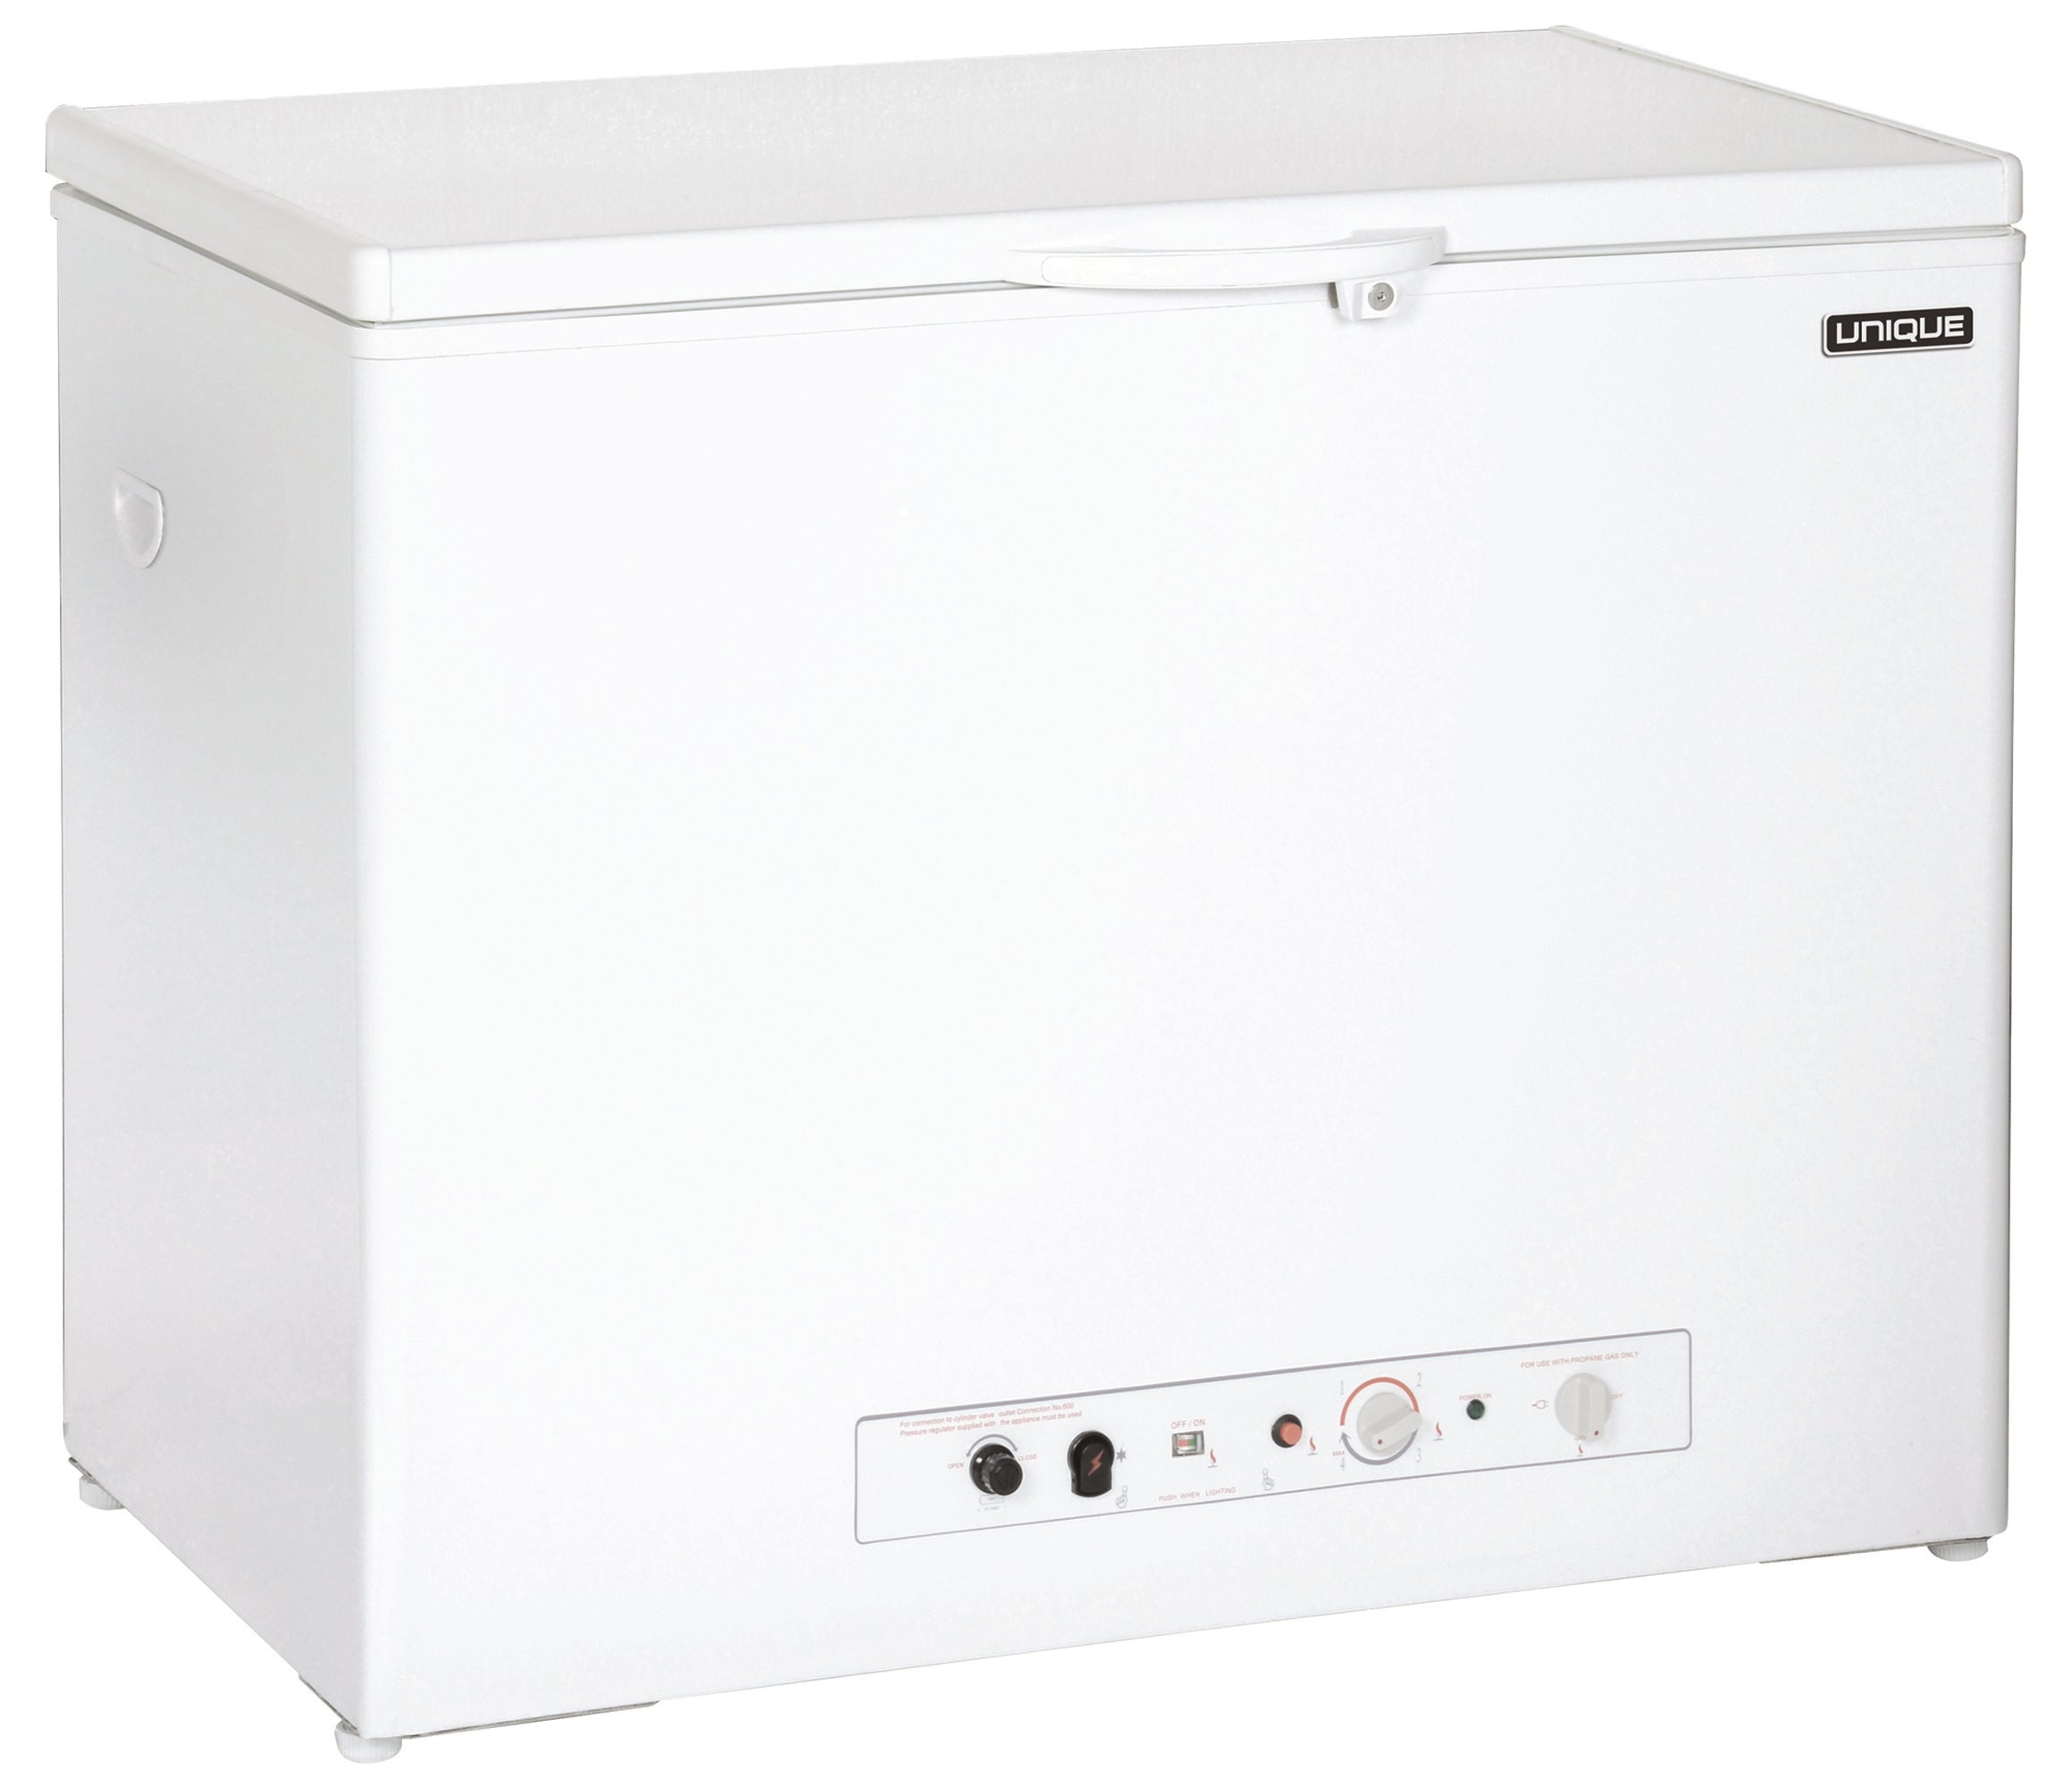 Unique Appliances - 6 cu. Ft  Chest Freezer in White - UGP-6F CM W